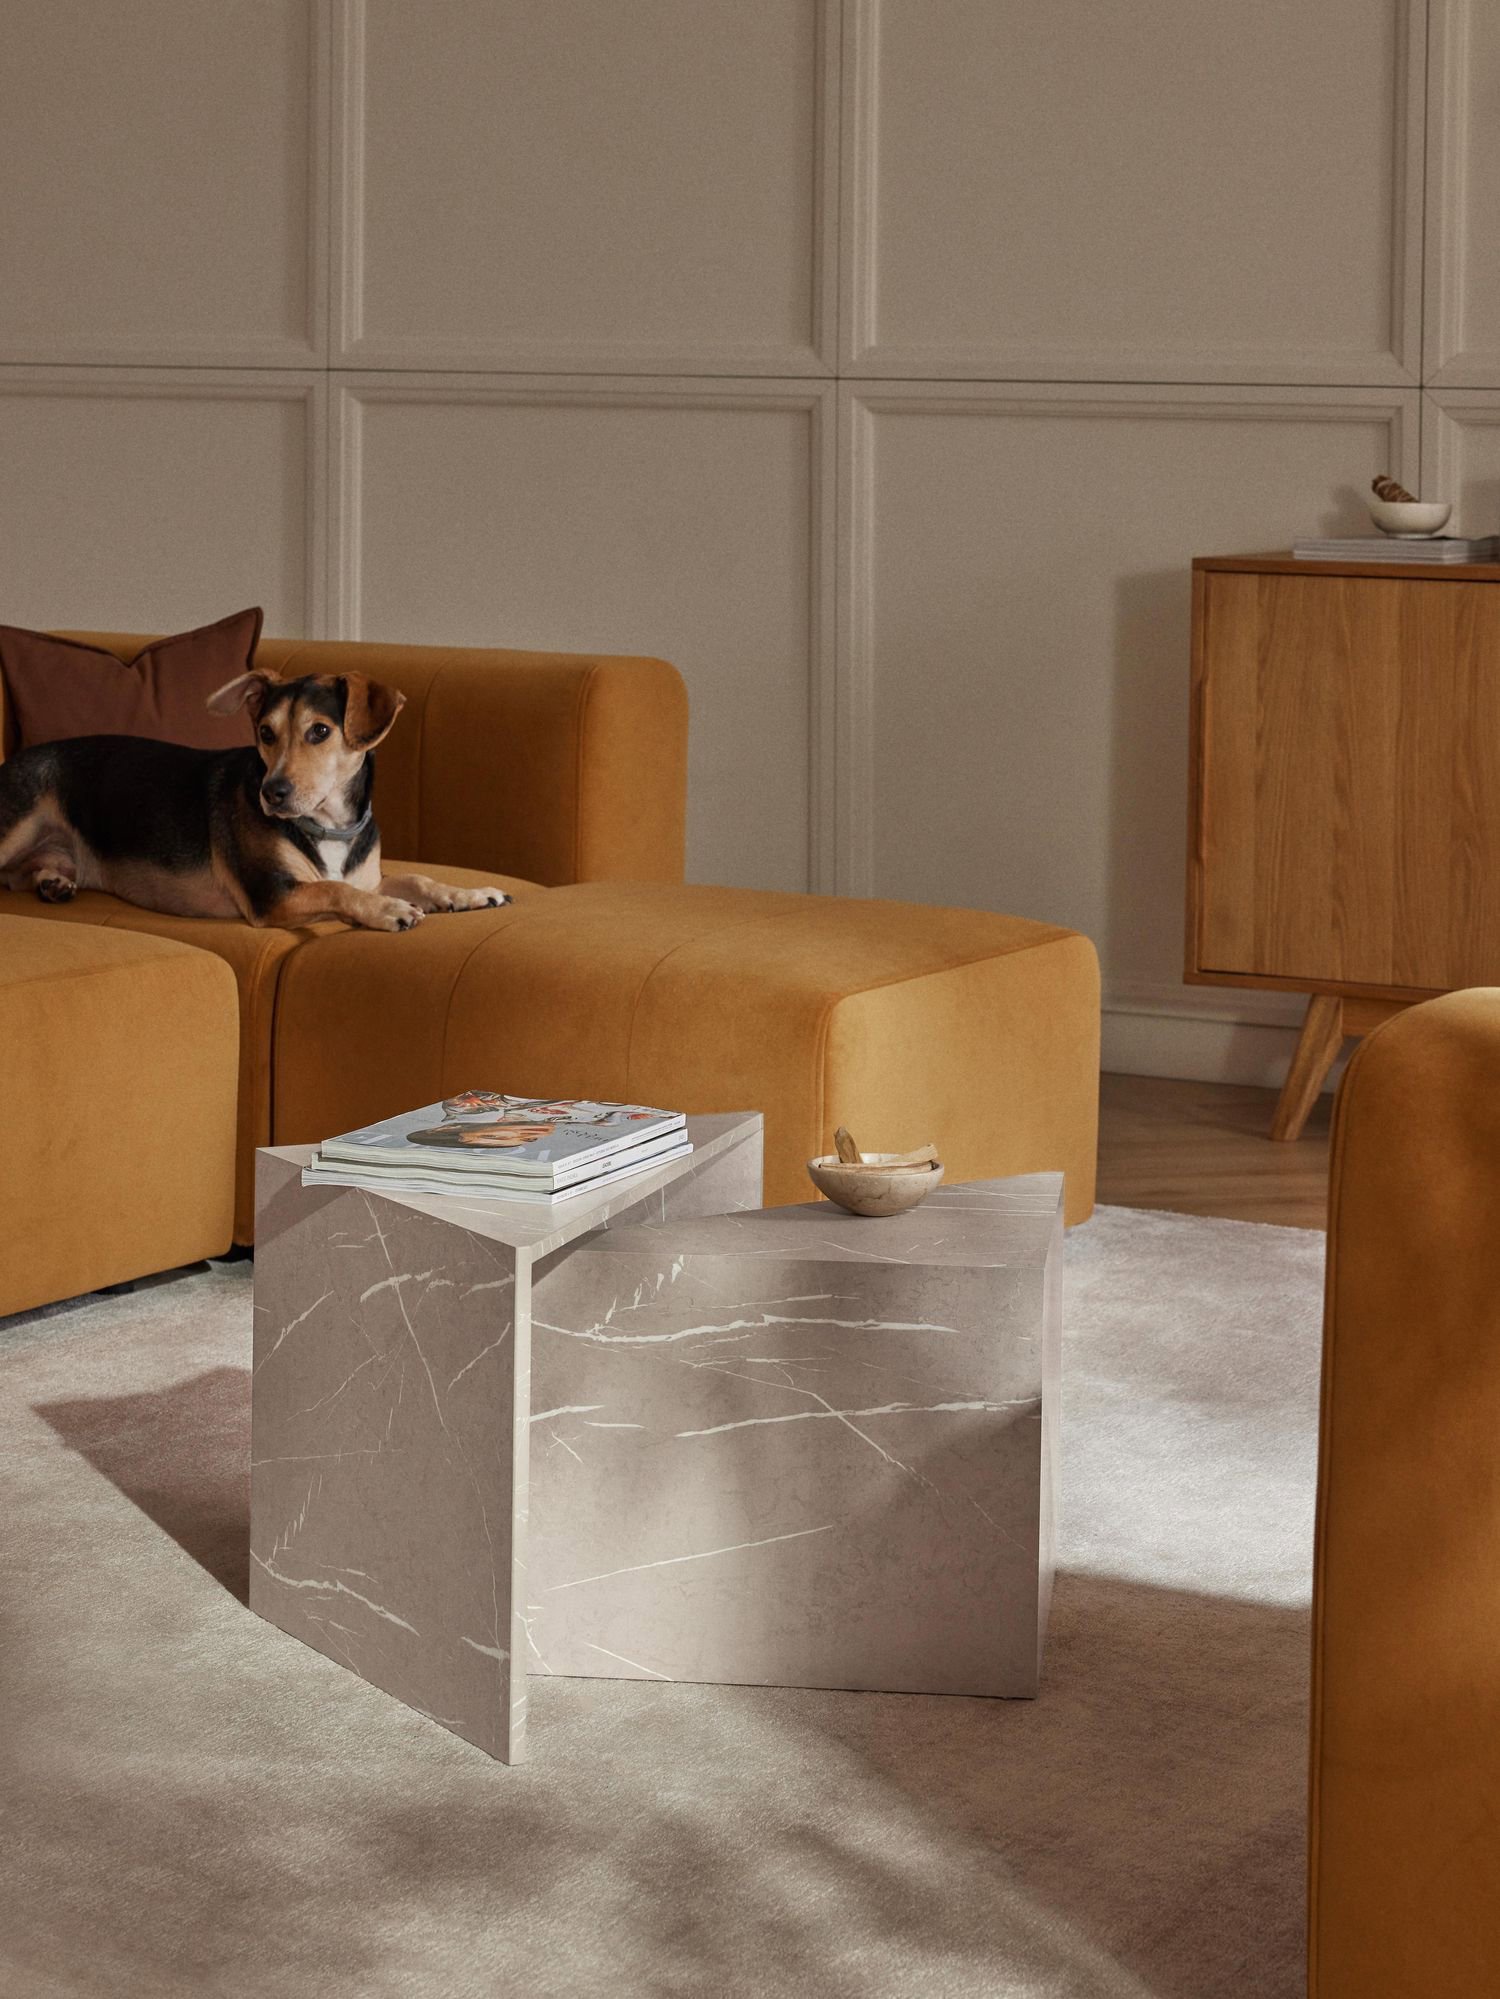 Mesa de marmol triangular con otra más pequeña en su interior en colores grises y blancos. Están en un saón moderno con sofá color mostaza, arriba de él un perro luce tranquilamente mirando a la cámara. 